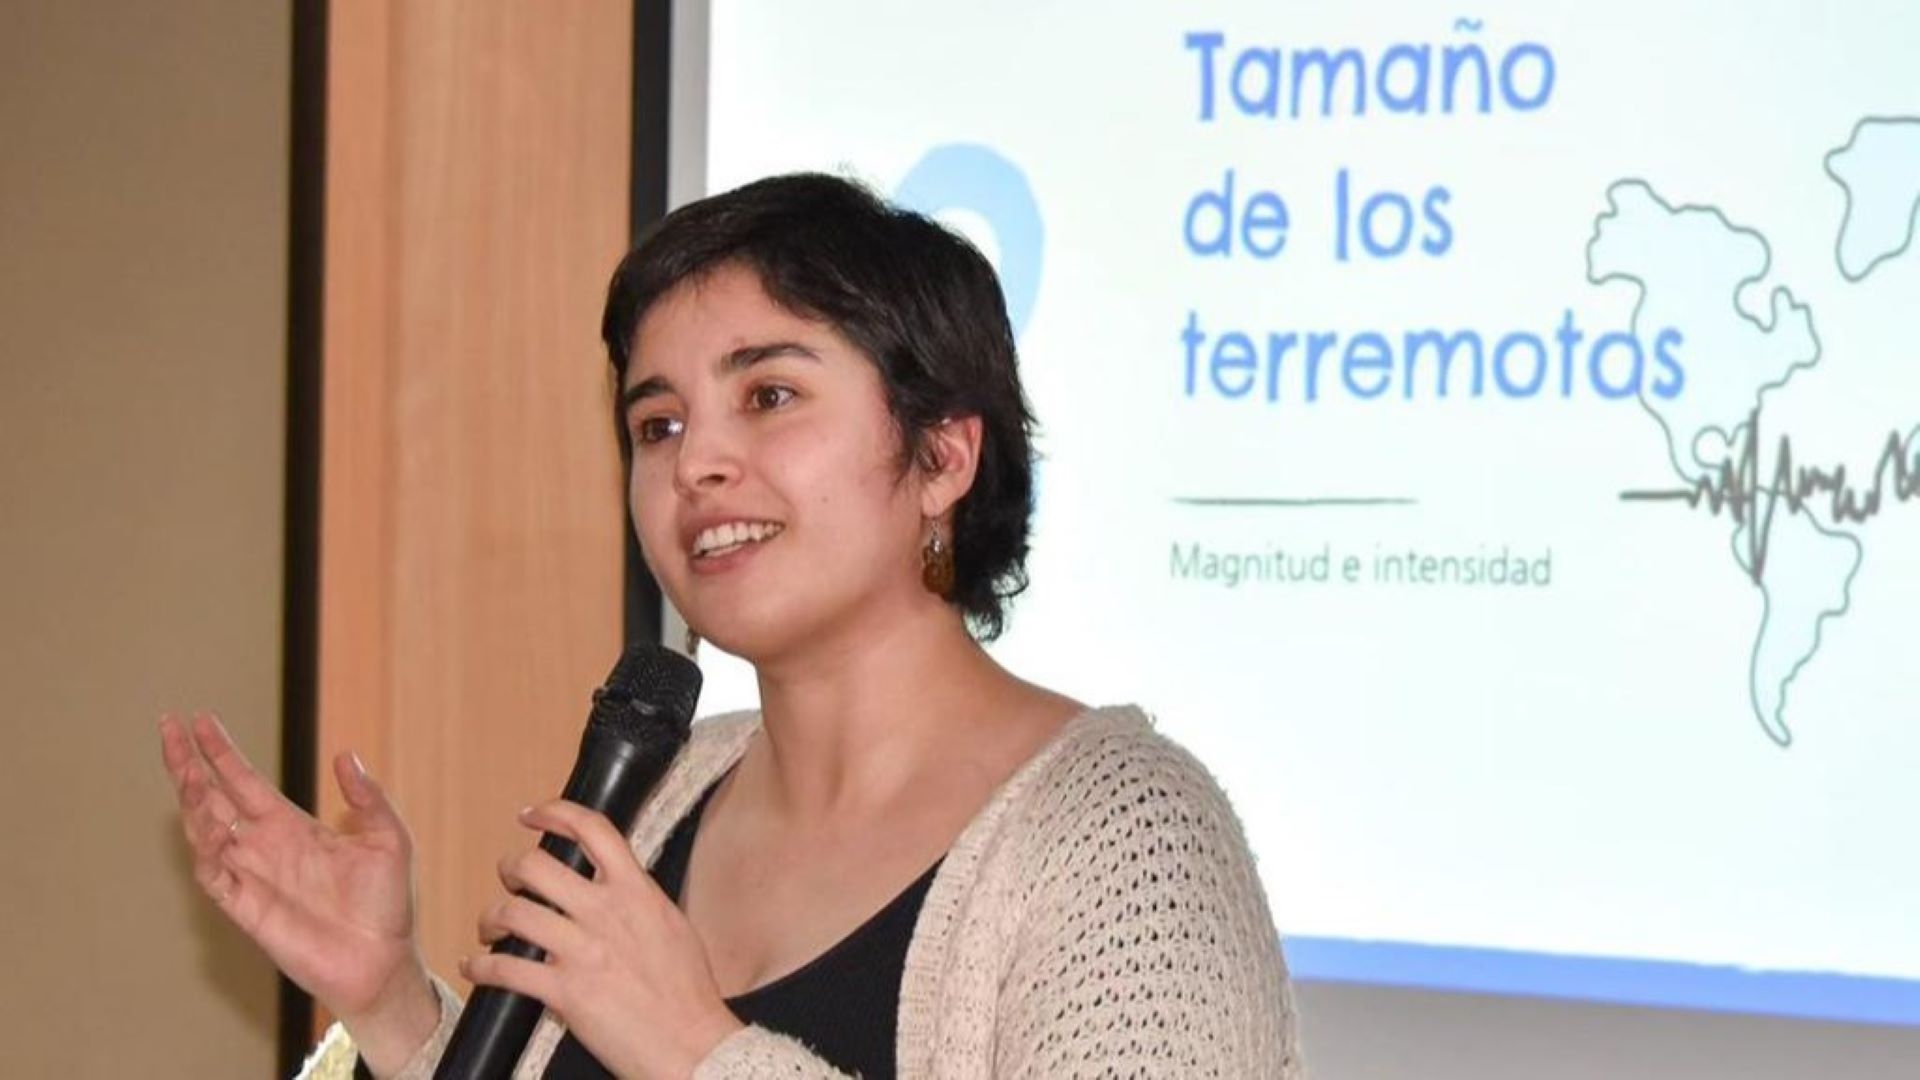 María Constanza Flores: La geofísica e influencer de los terremotos